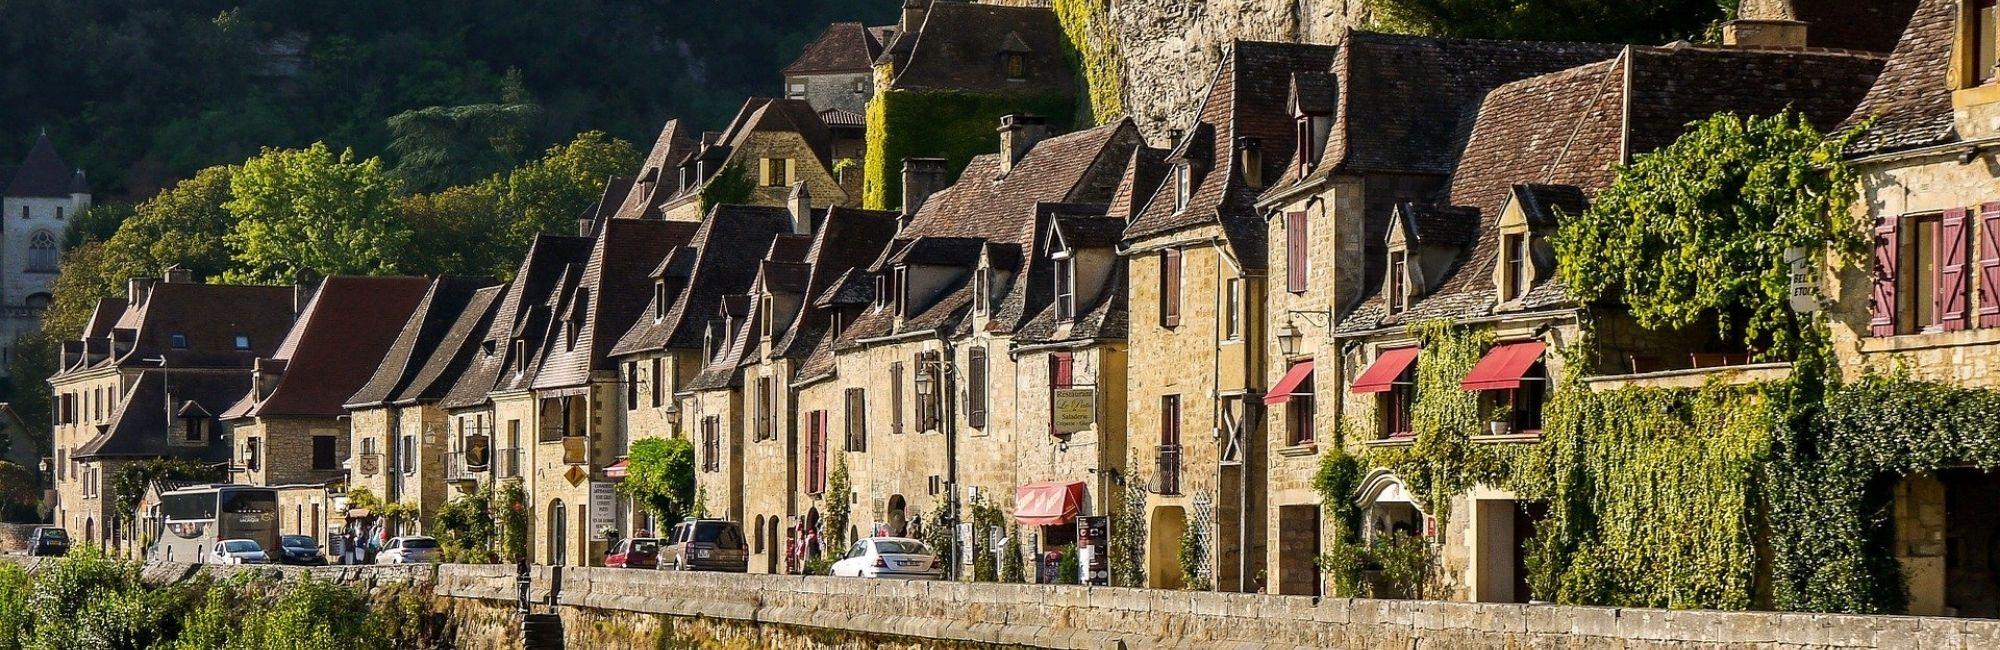 Dordogne-La Roque Gageac-Pixabay